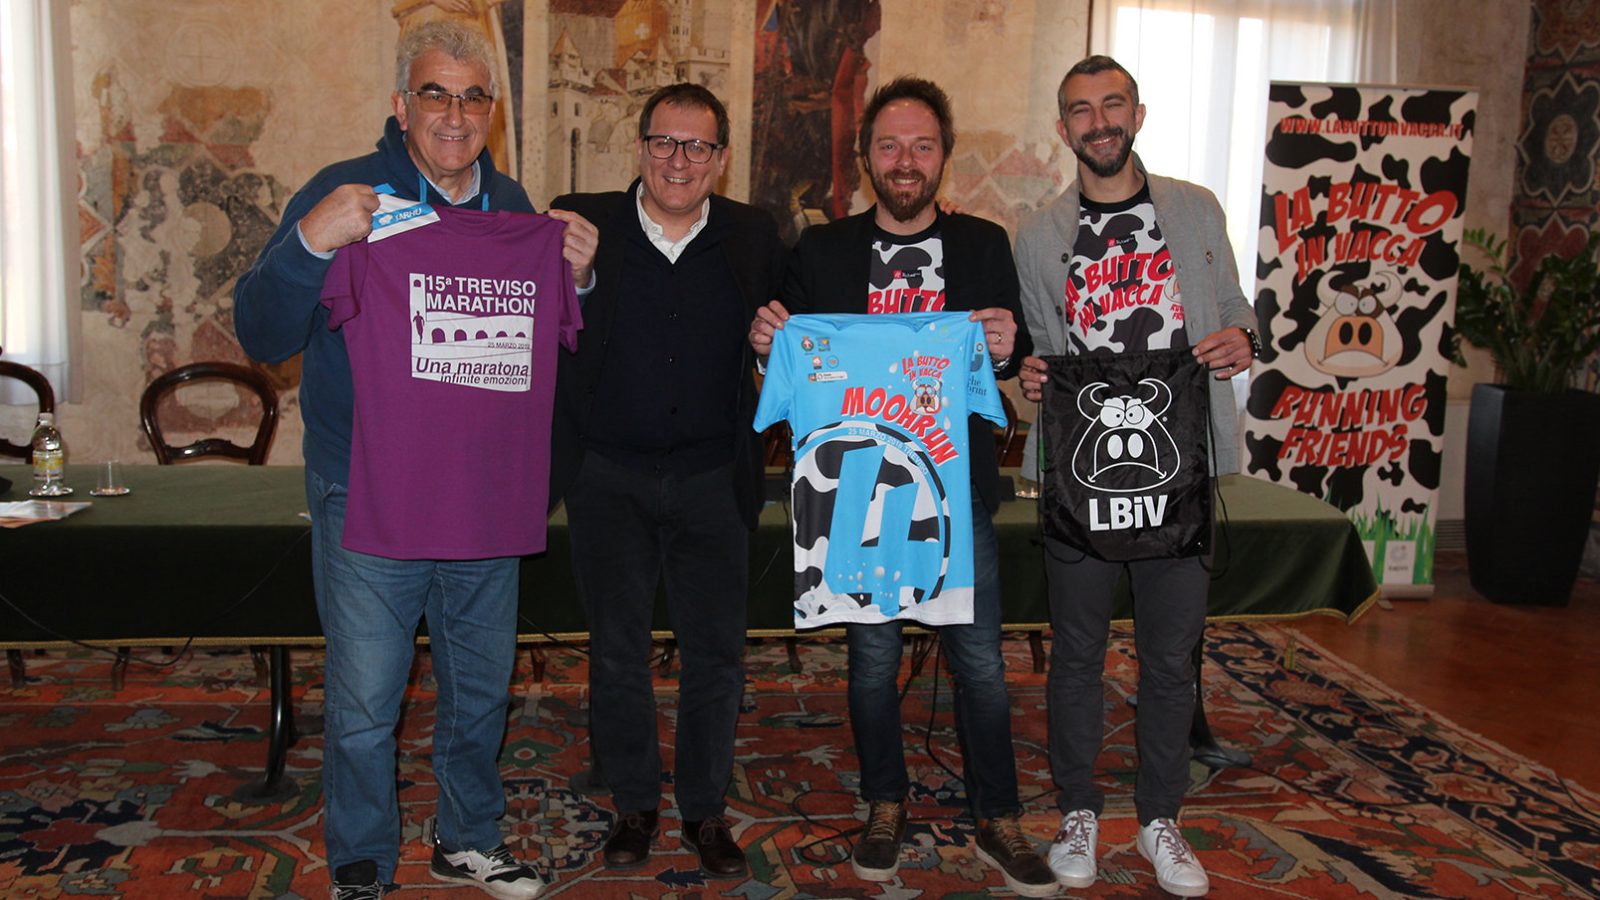 Treviso Marathon 2018, la presentazione ufficiale